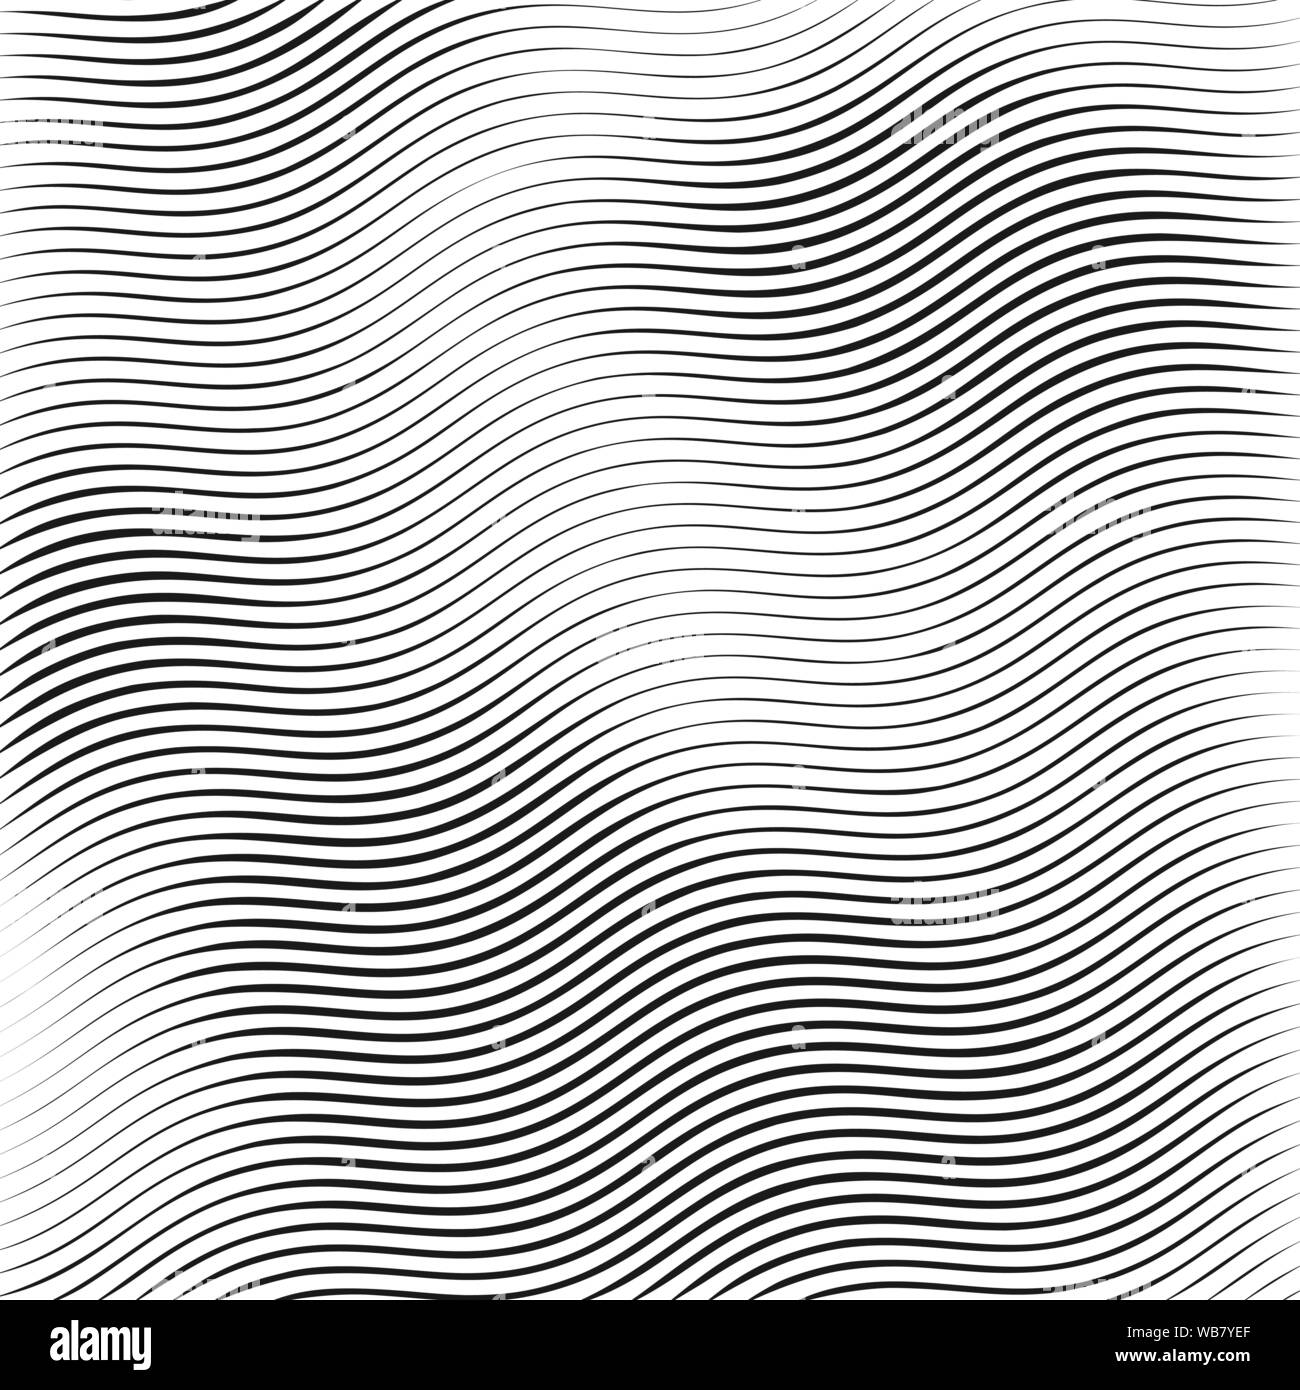 Streifen, Wellenlinien. Monochrome wellige Textur auf weißem Hintergrund. Vector Illustration Stock Vektor